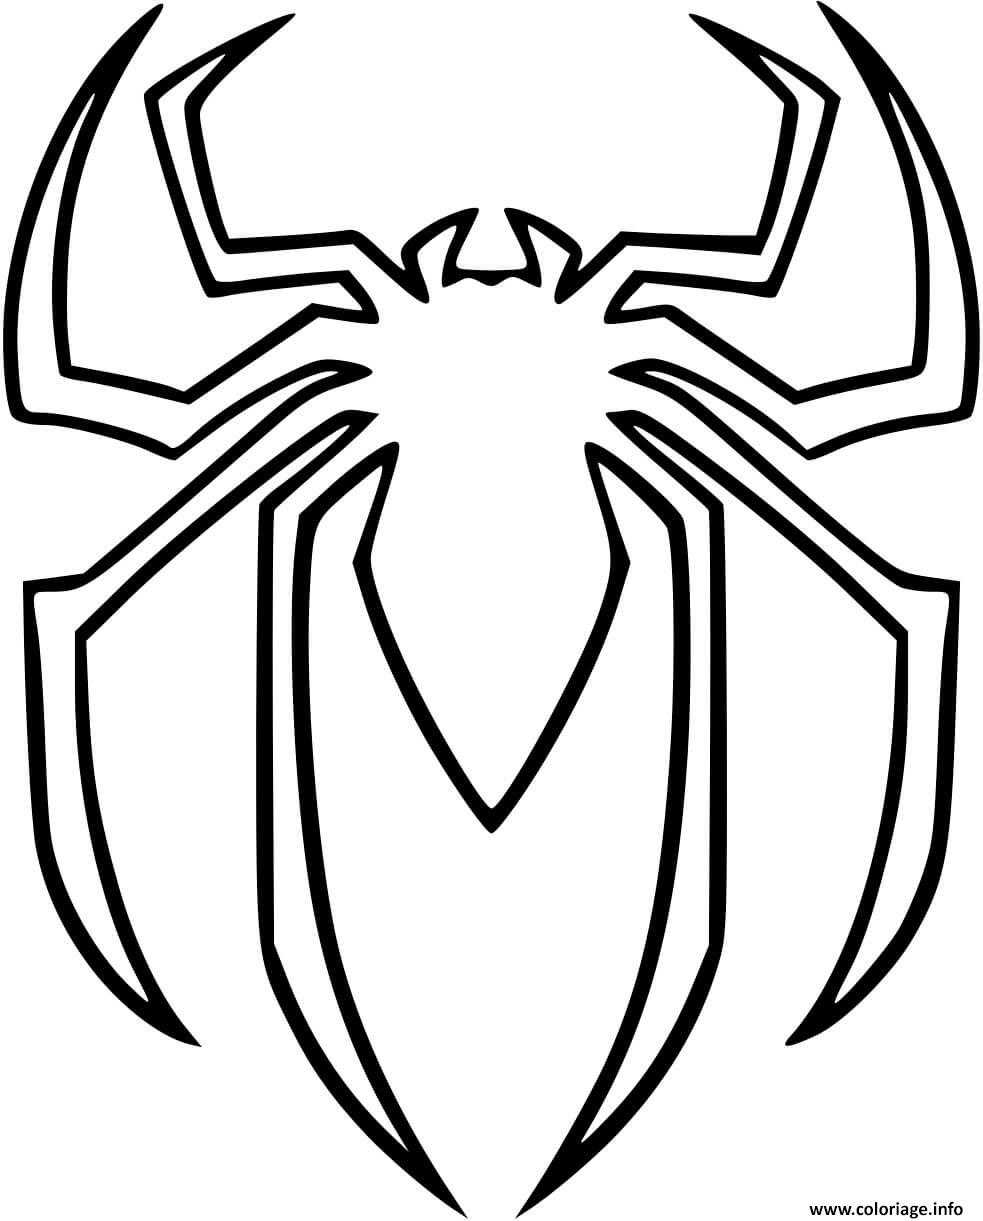 Coloriage Araignee Spiderman Logo Dessin Araignee à imprimer